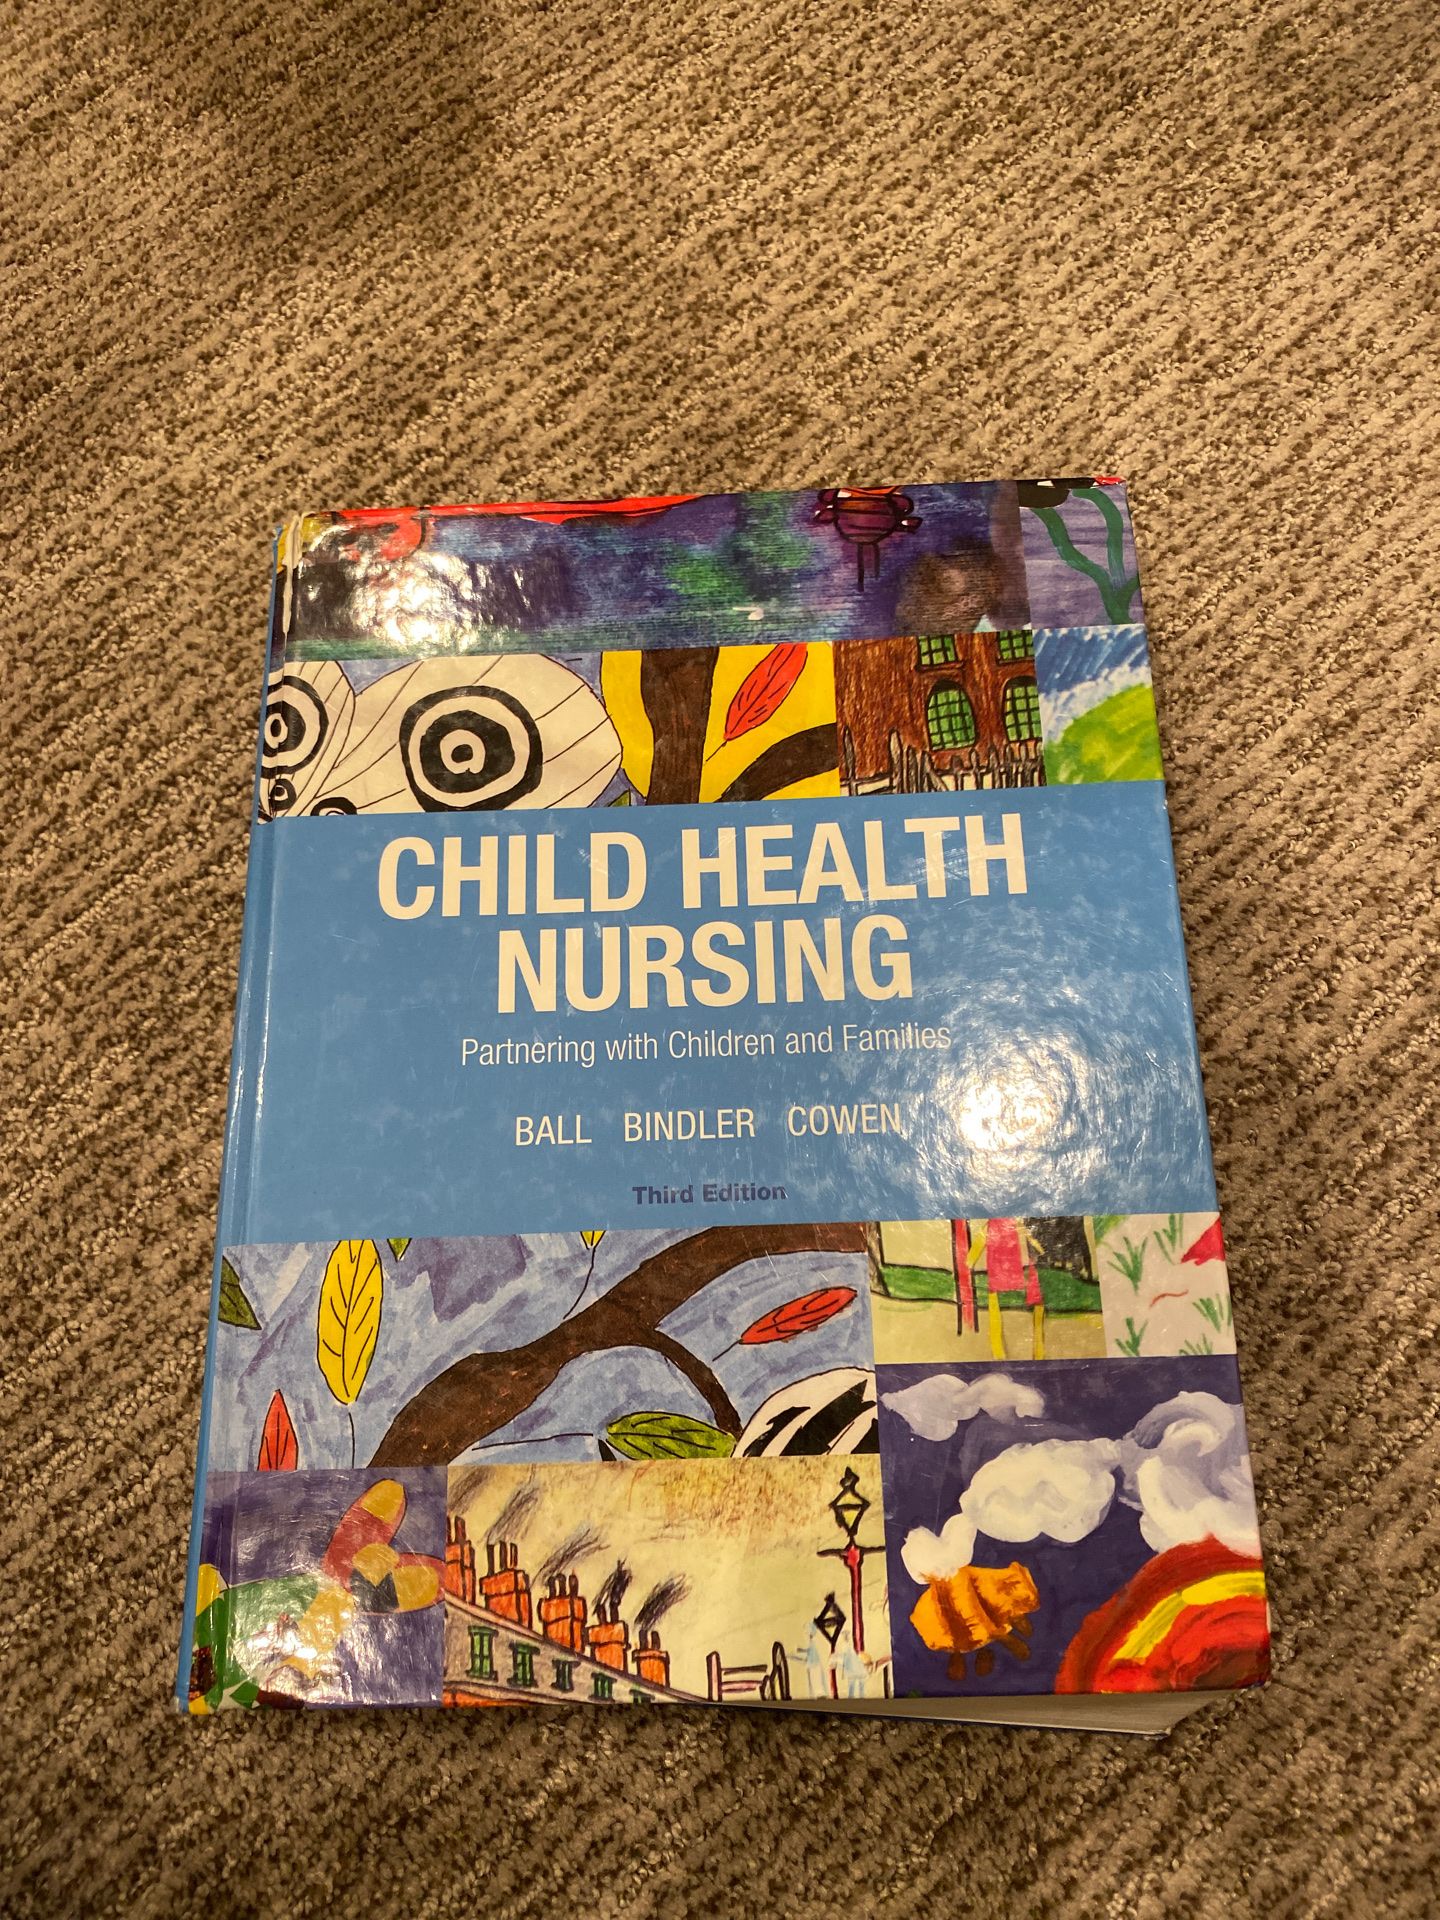 Child health nursing